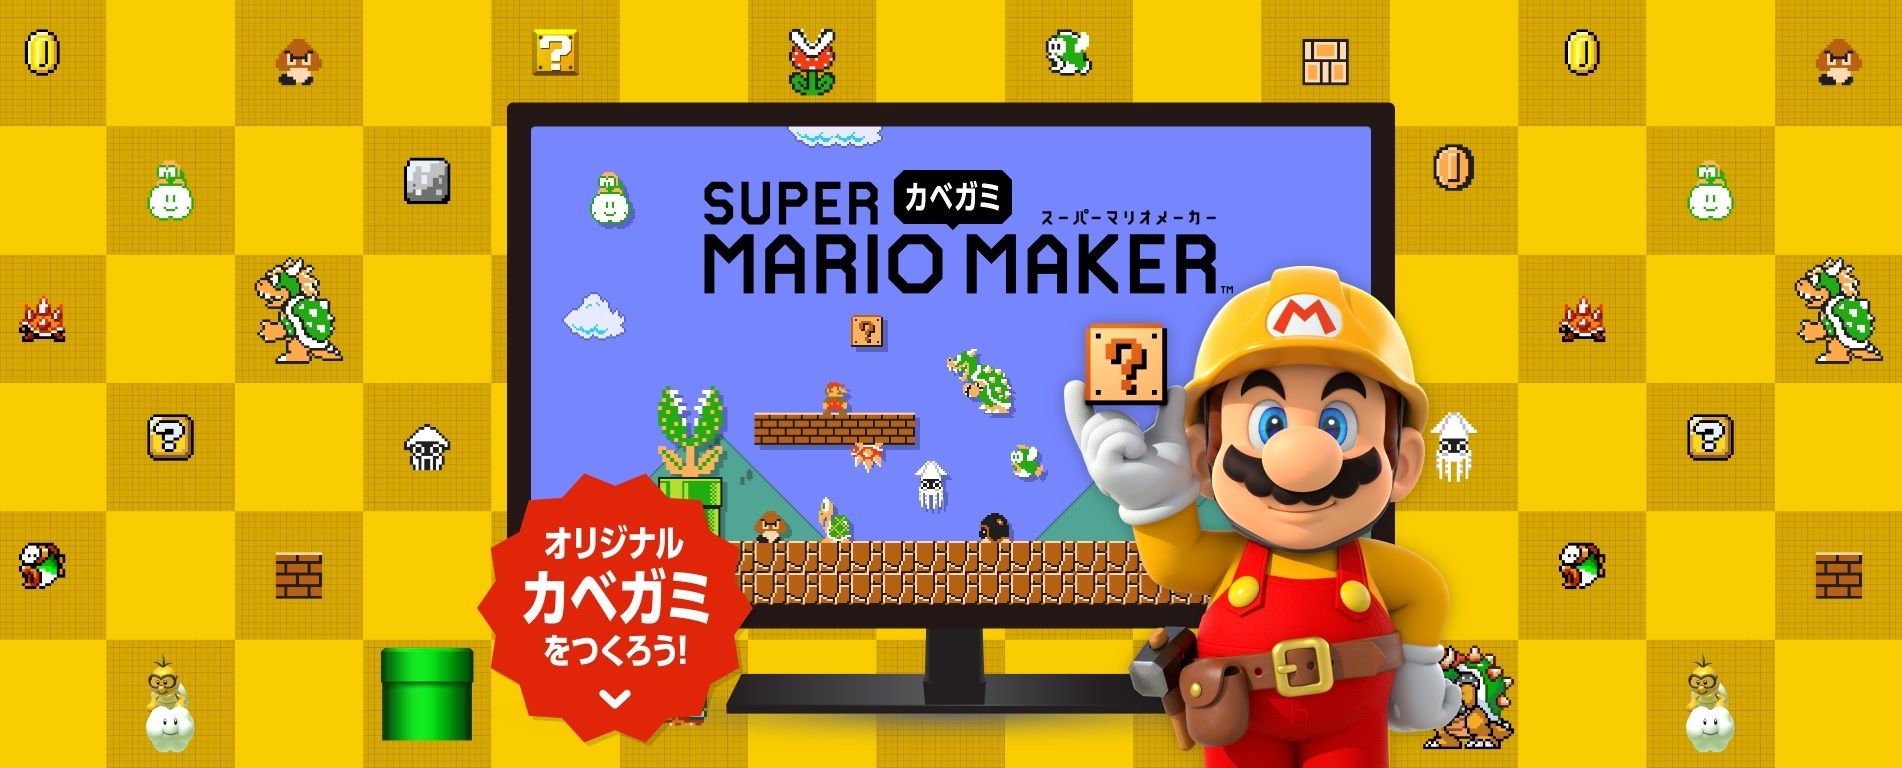 Super Mario Maker 11